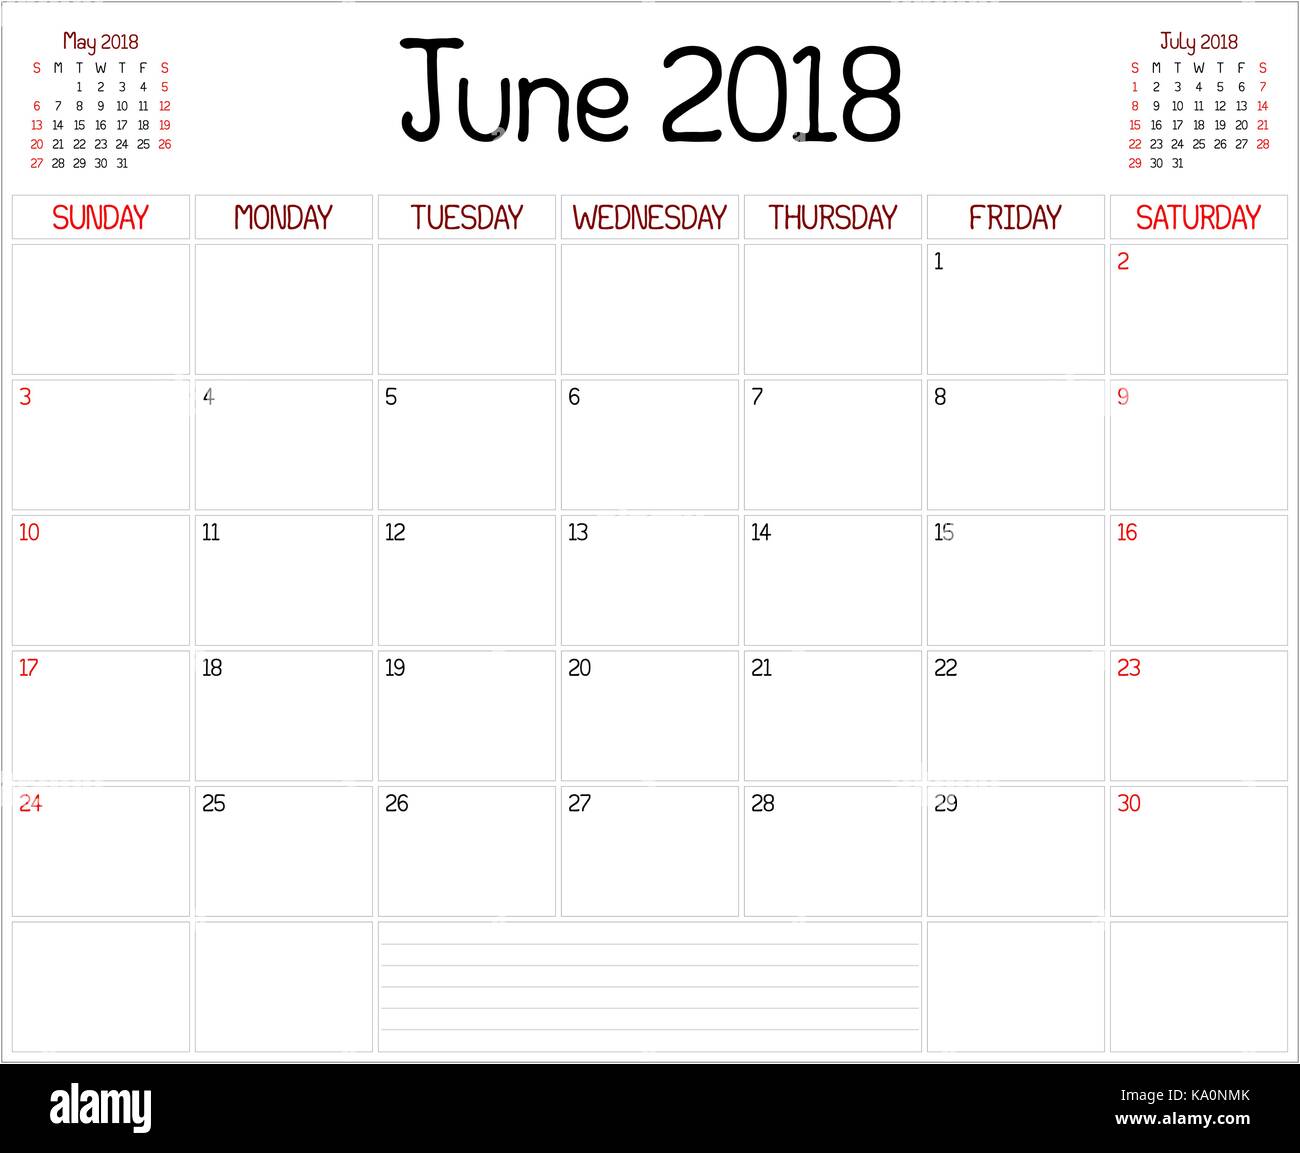 2018 Juni Planer - Eine Monatliche Planer Kalender Für Juni 2018 Auf Weiß.  Eine Benutzerdefinierte Handgeschriebene Stil Verwendet Stock-Vektorgrafik  - Alamy